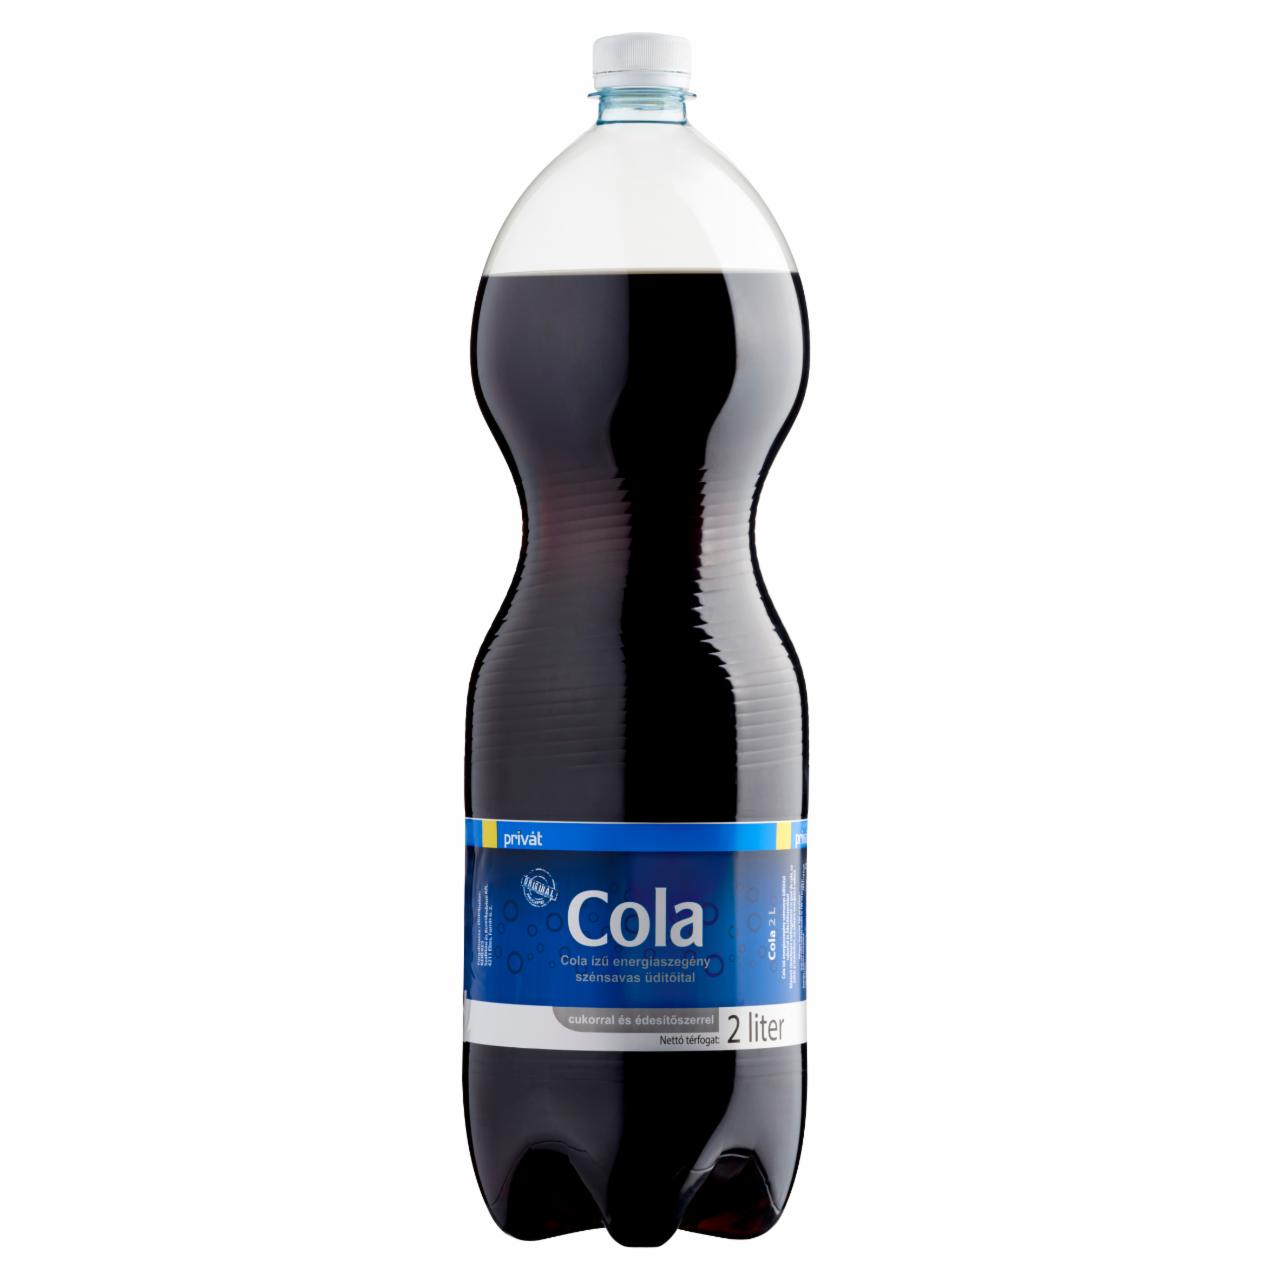 Képek - Privát cola ízű energiaszegény szénsavas üdítőital cukorral és édesítőszerrel 2 l